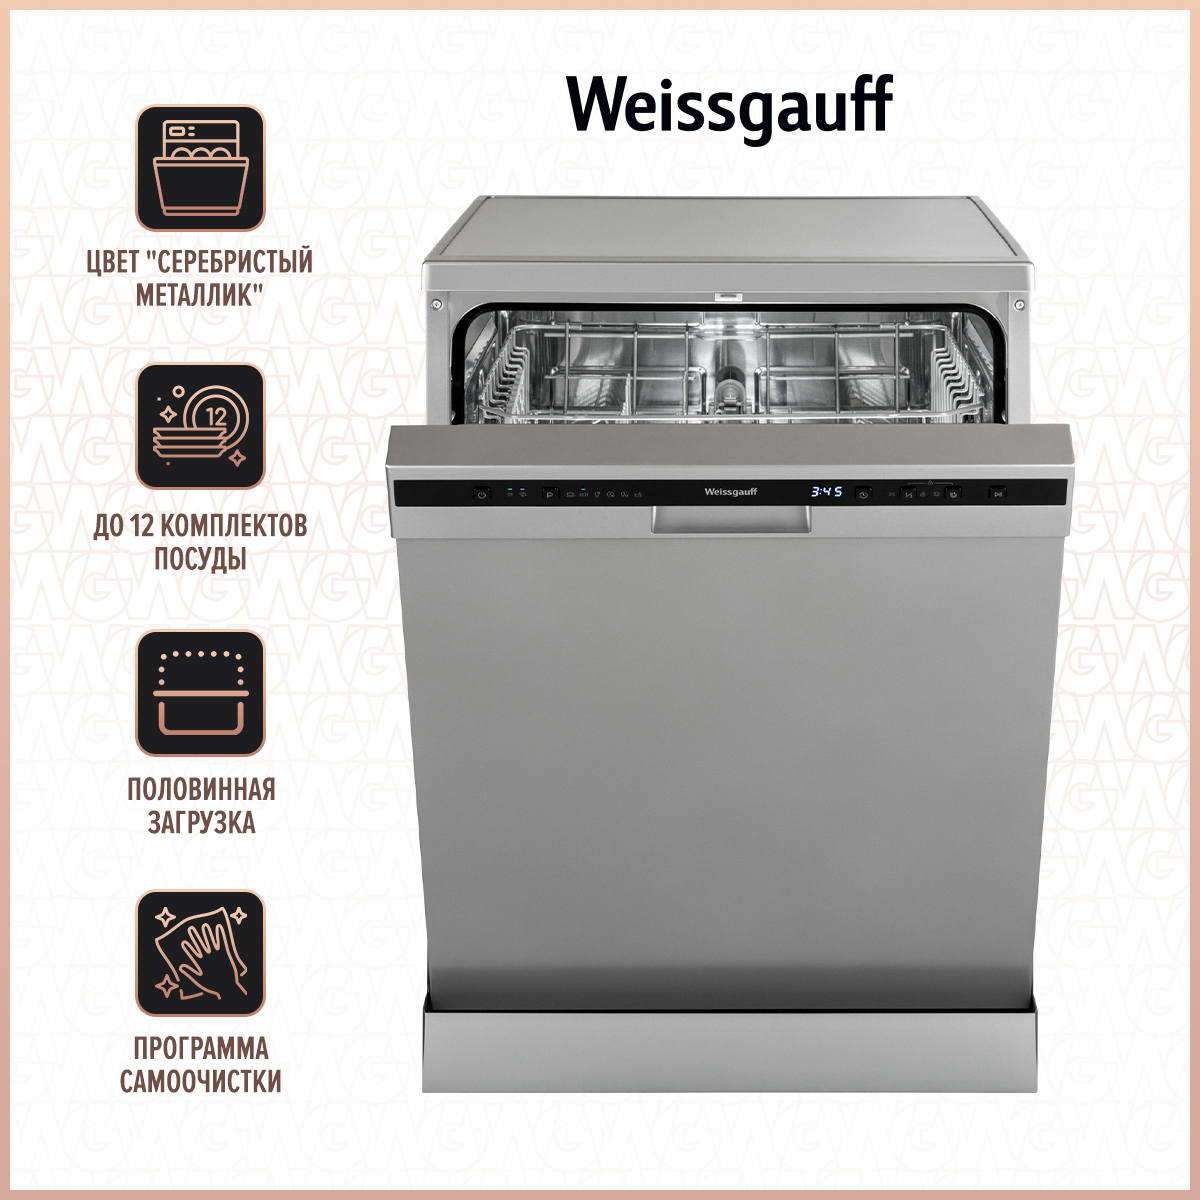 Посудомоечная машина Weissgauff DW 6026 D Silver серебристый посудомоечная машина weissgauff dw 4015 серебристый